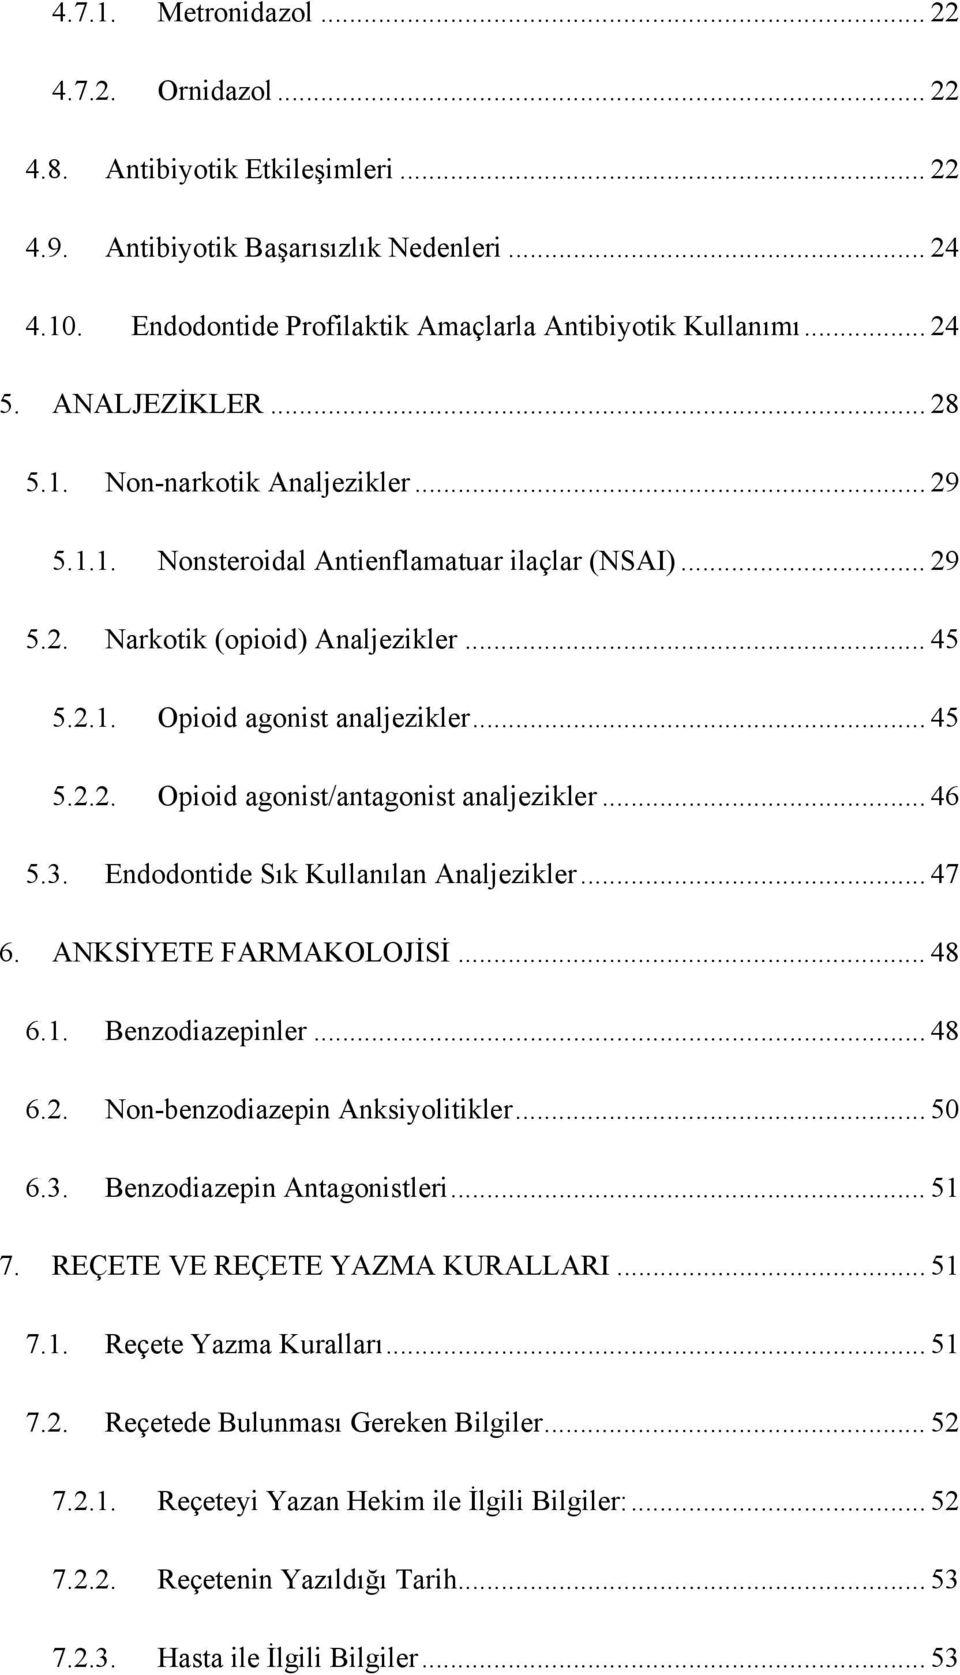 .. 46 5.3. Endodontide Sık Kullanılan Analjezikler... 47 6. ANKSİYETE FARMAKOLOJİSİ... 48 6.1. Benzodiazepinler... 48 6.2. Non-benzodiazepin Anksiyolitikler... 50 6.3. Benzodiazepin Antagonistleri.